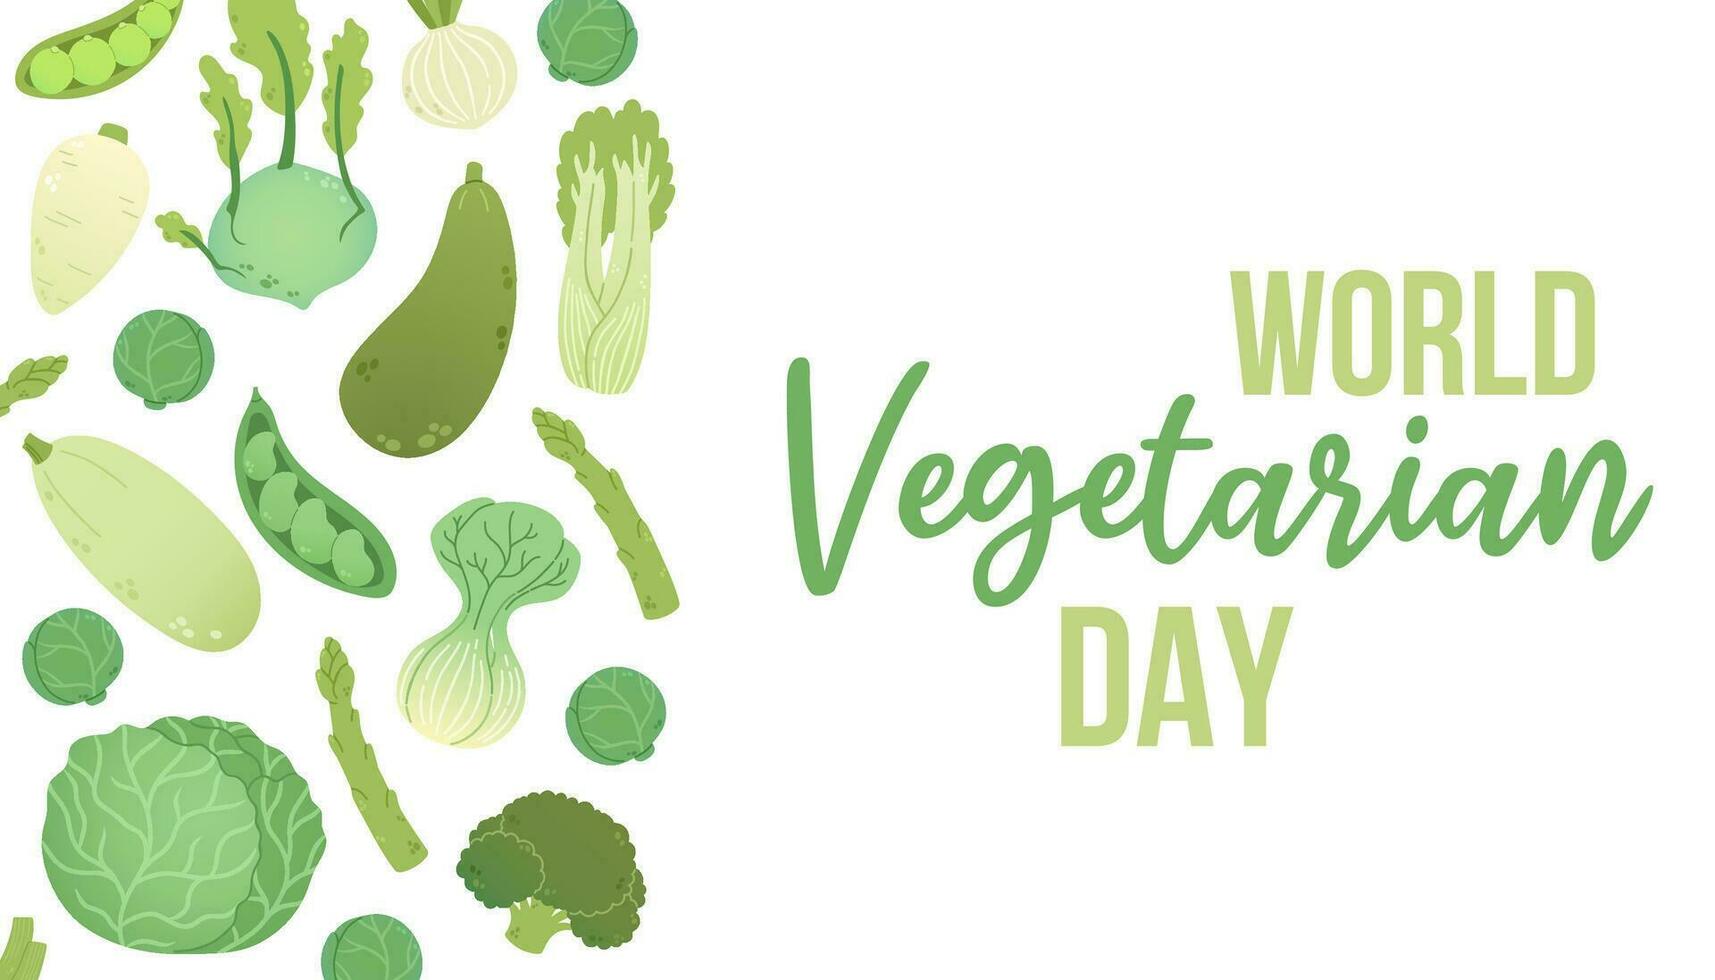 wereld vegetarisch dag vector illustratie. wereld vegetarisch dag typfout tekst voor kaarten, stickers, t-shirt, banners en posters